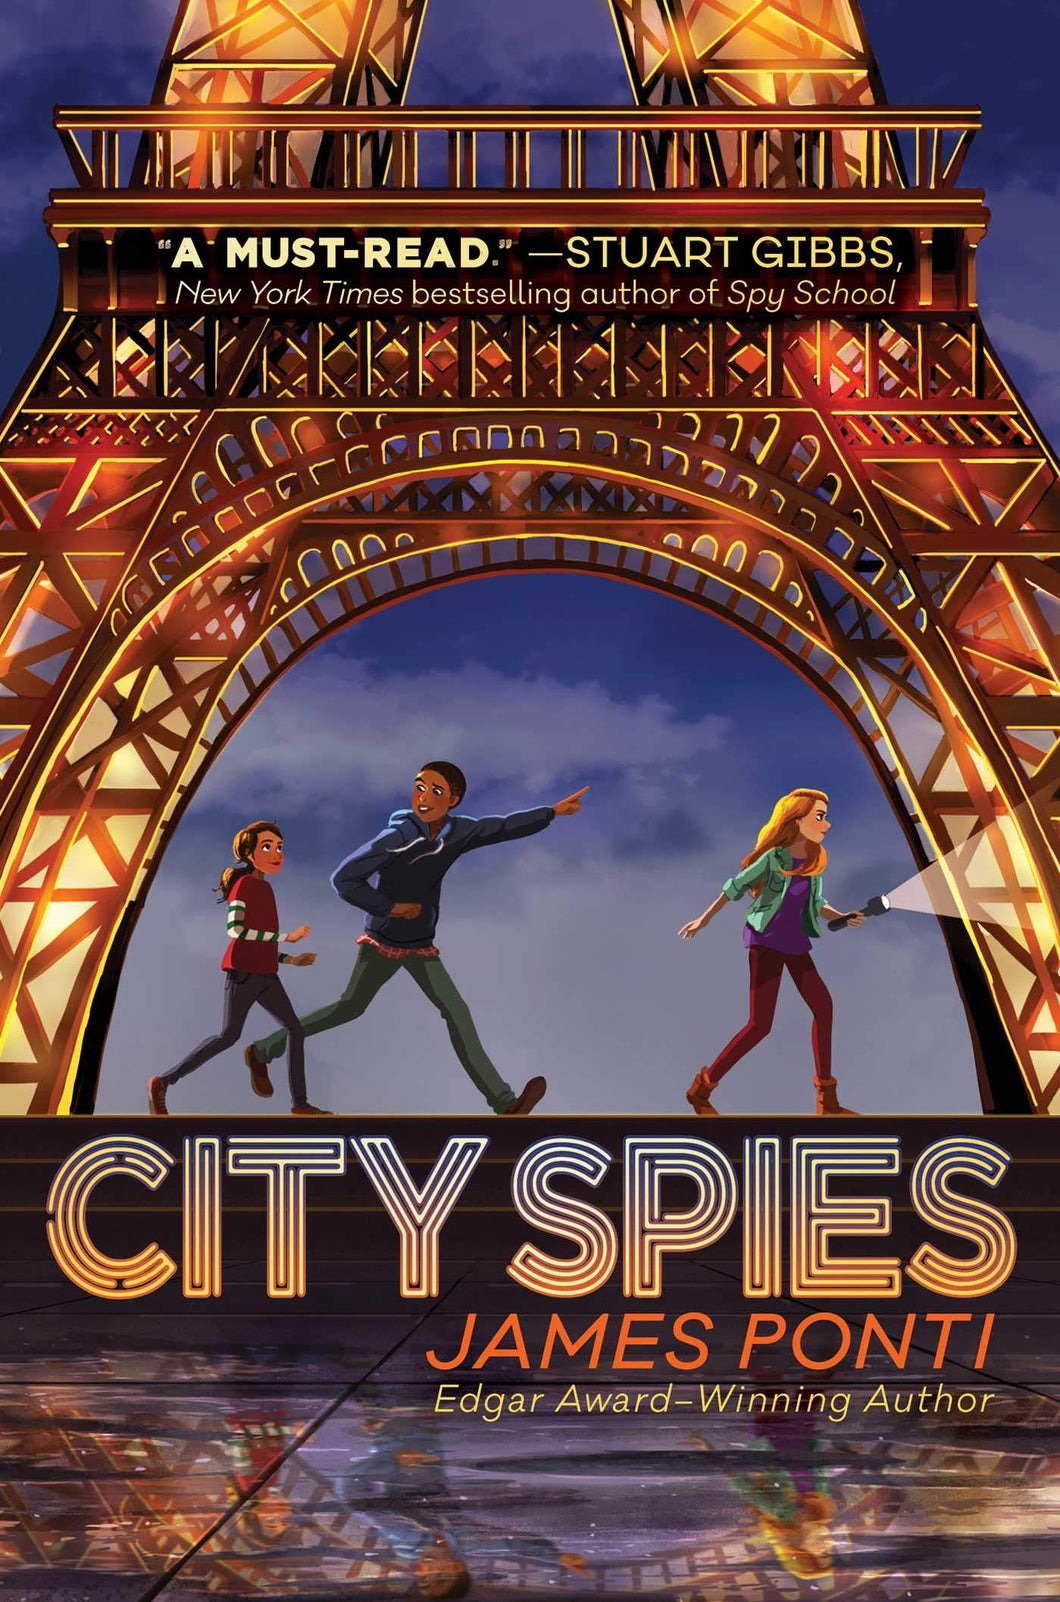 City Spies